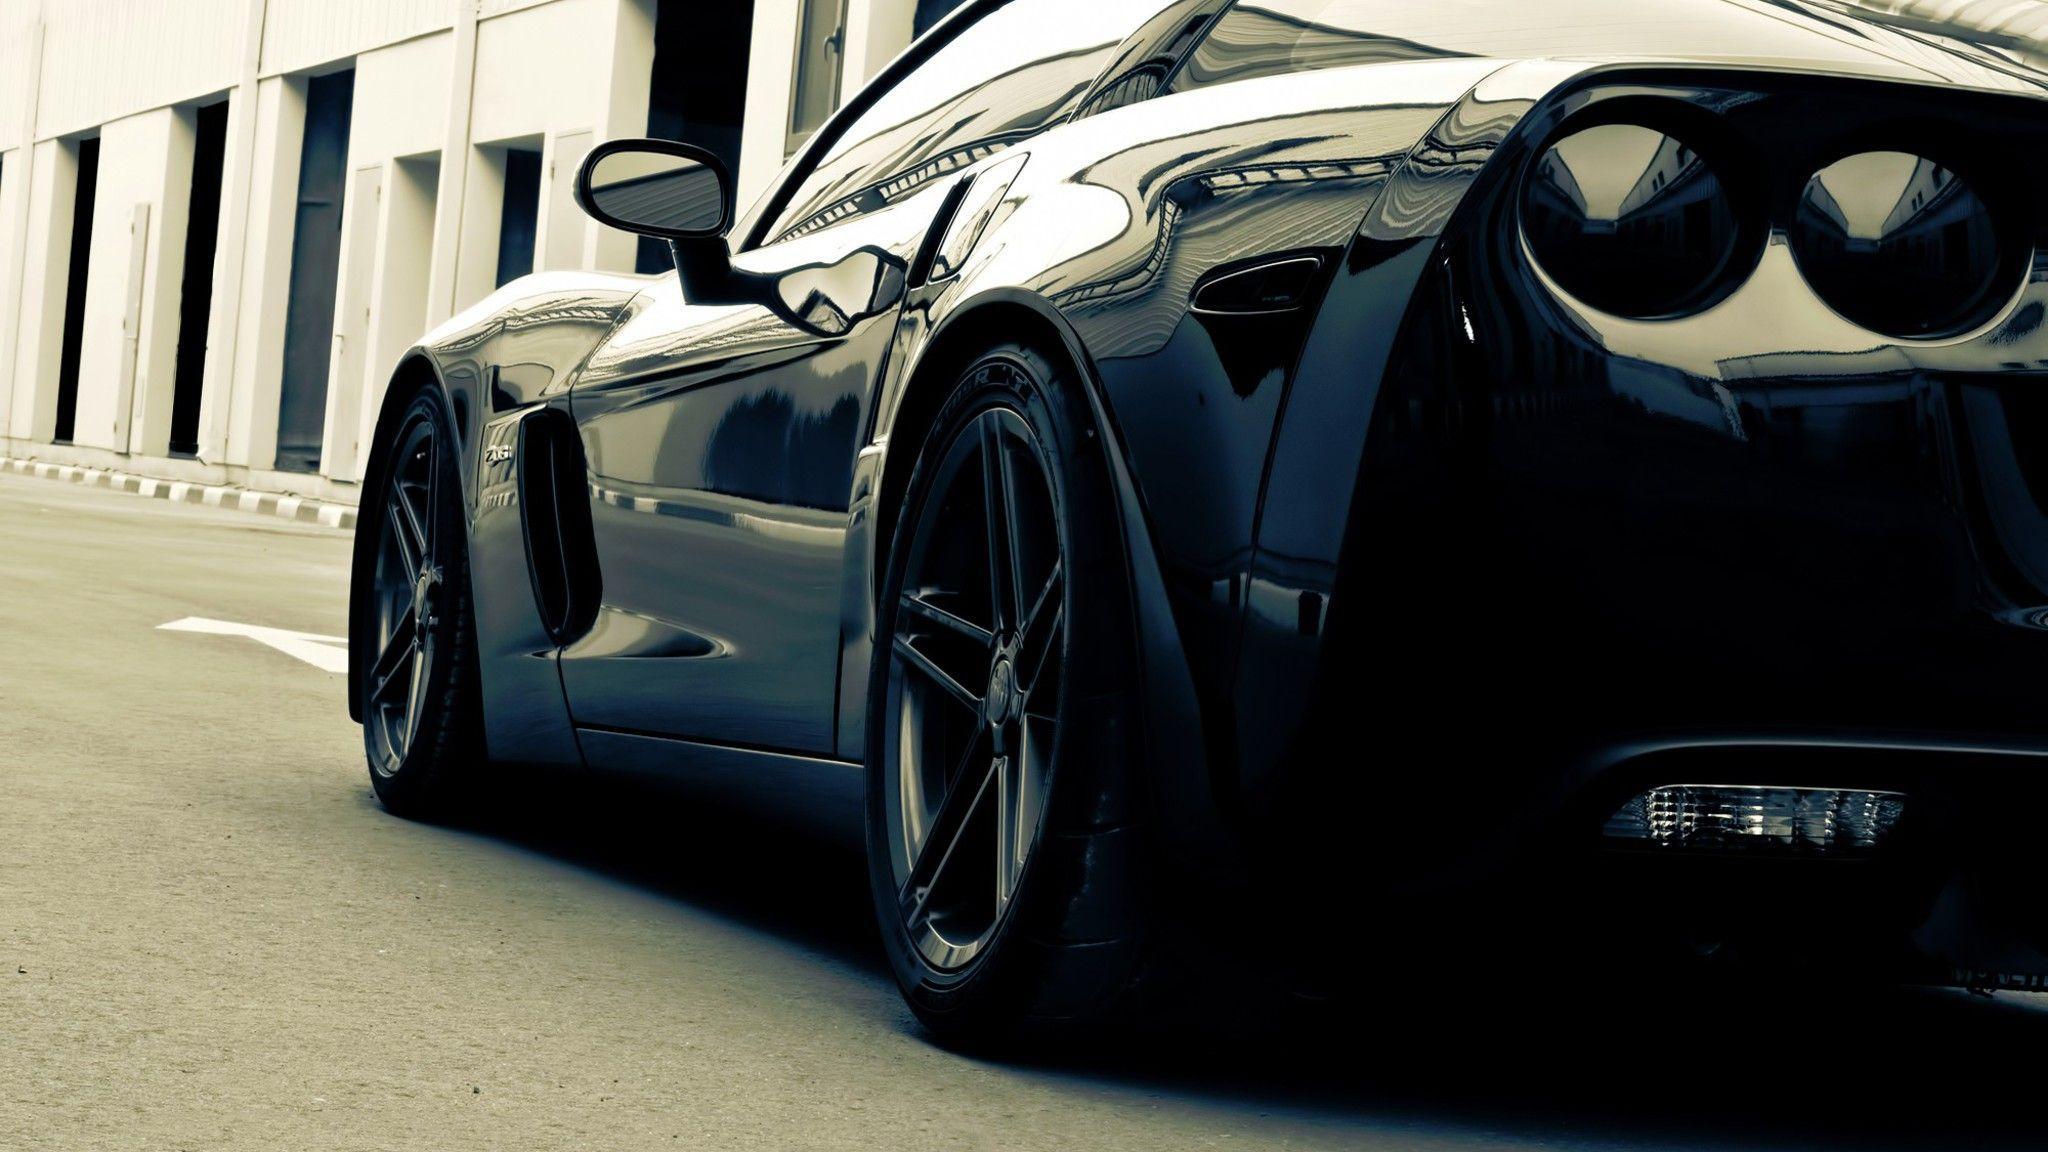 Corvette black cars wallpaper. PC